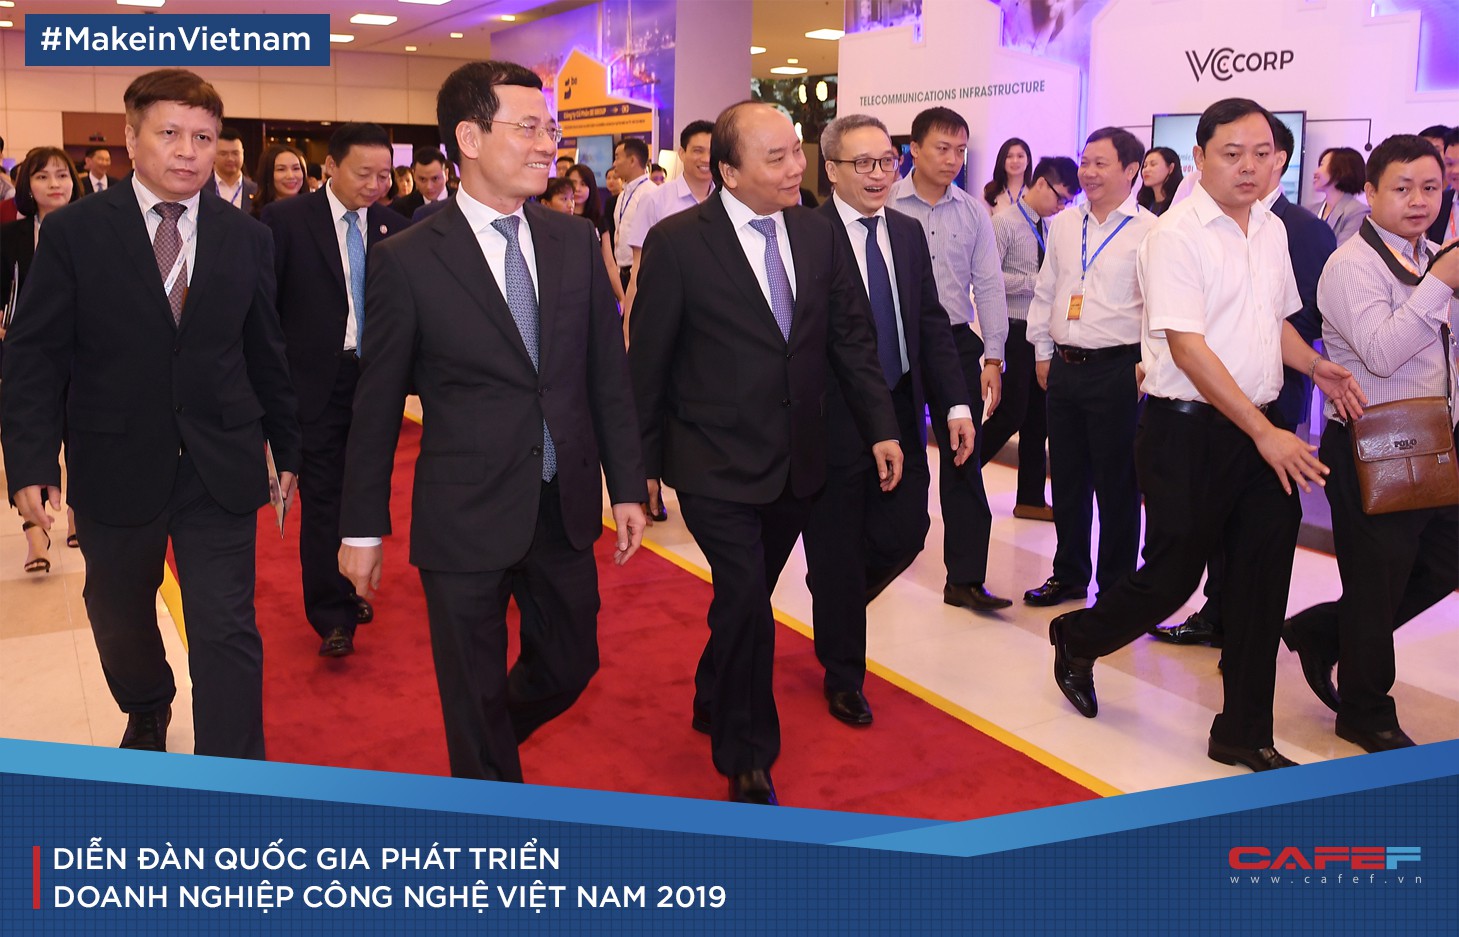 Góc nhìn lạ đằng sau “Make in Vietnam” của Bộ trưởng Nguyễn Mạnh Hùng - Ảnh 10.